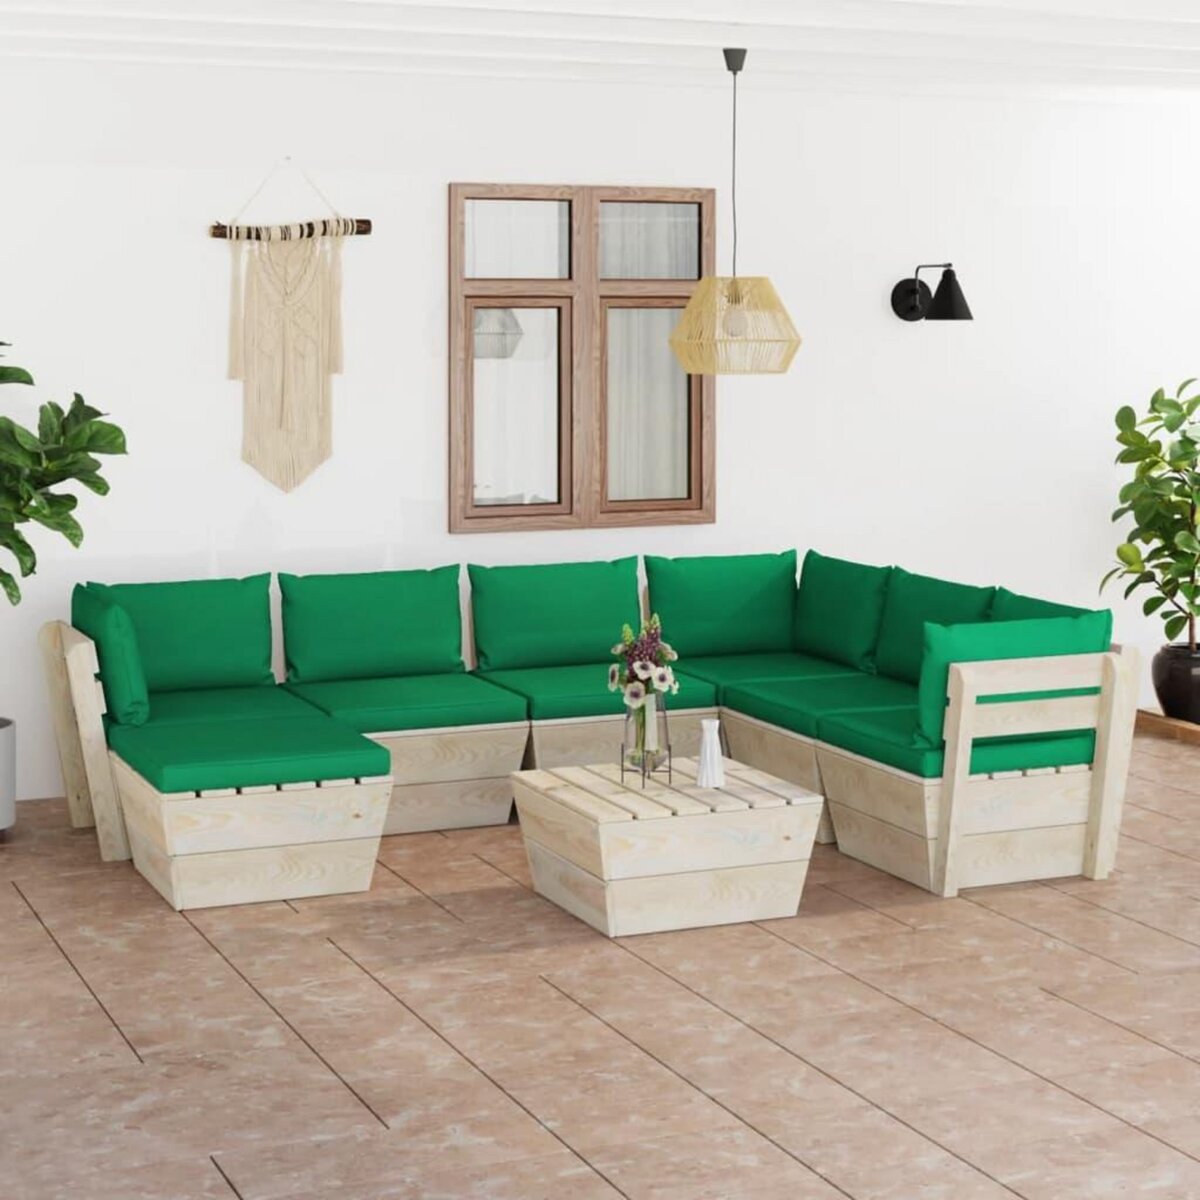 VIDAXL Salon de jardin palette 8 pcs avec coussins Epicea impregne